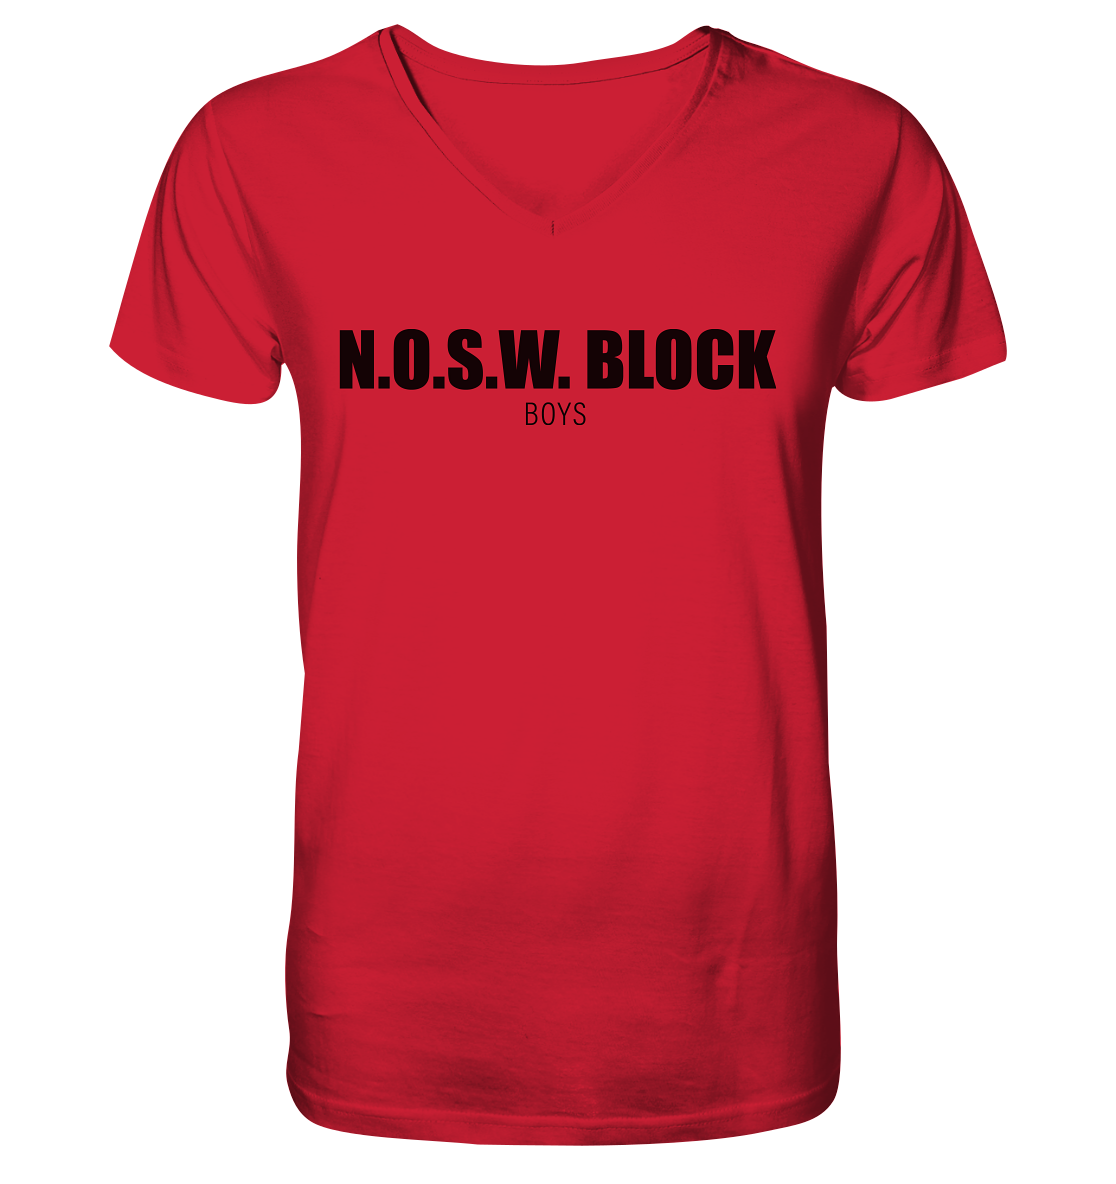 N.O.S.W. BLOCK Shirt "N.O.S.W. BLOCK BOYS" Männer Organic V-Neck T-Shirt rot